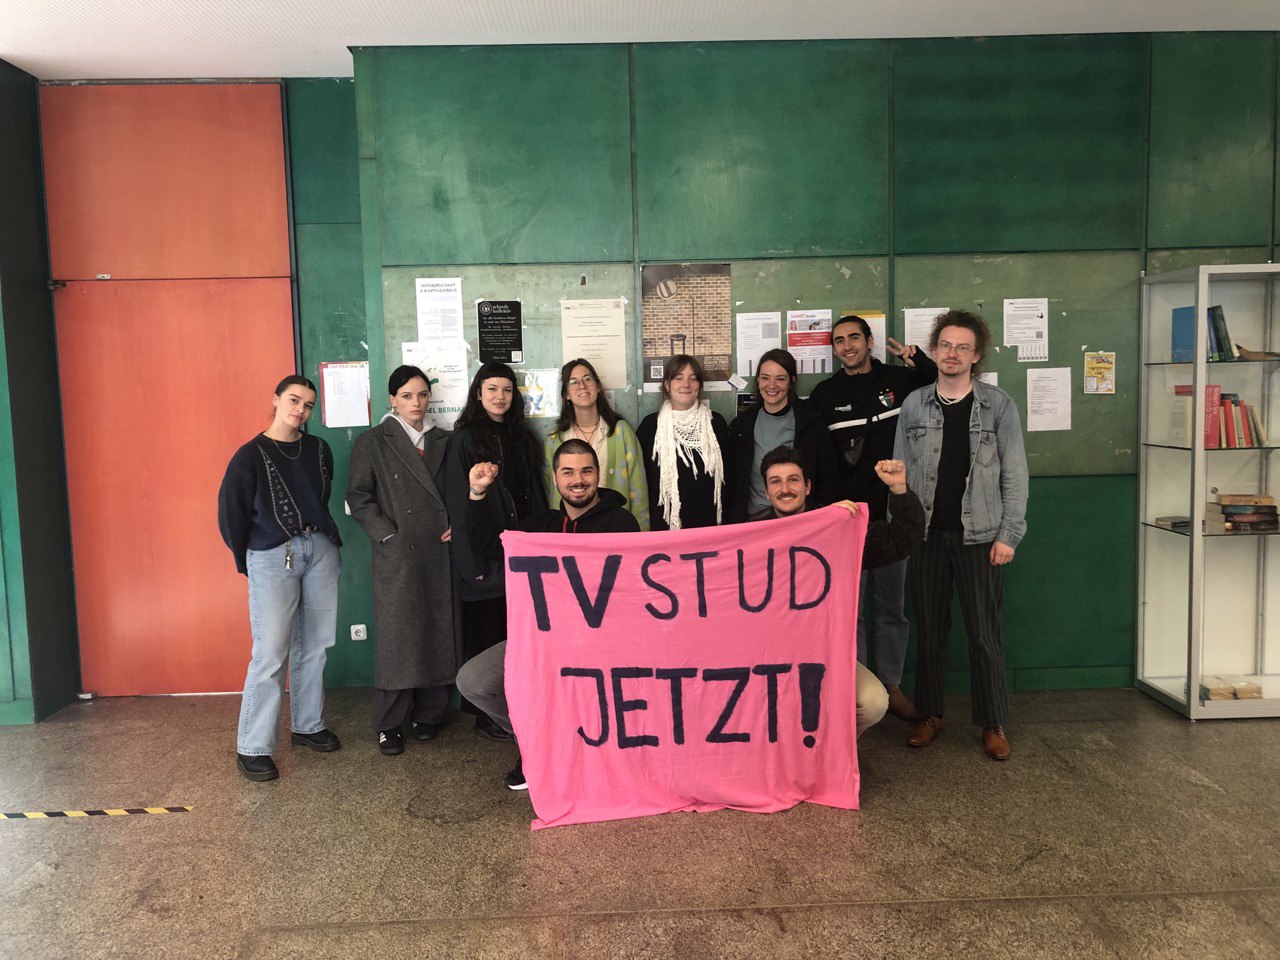 TVStud München zur EVG: Nein zur Einschränkung unseres Streiksrechts!